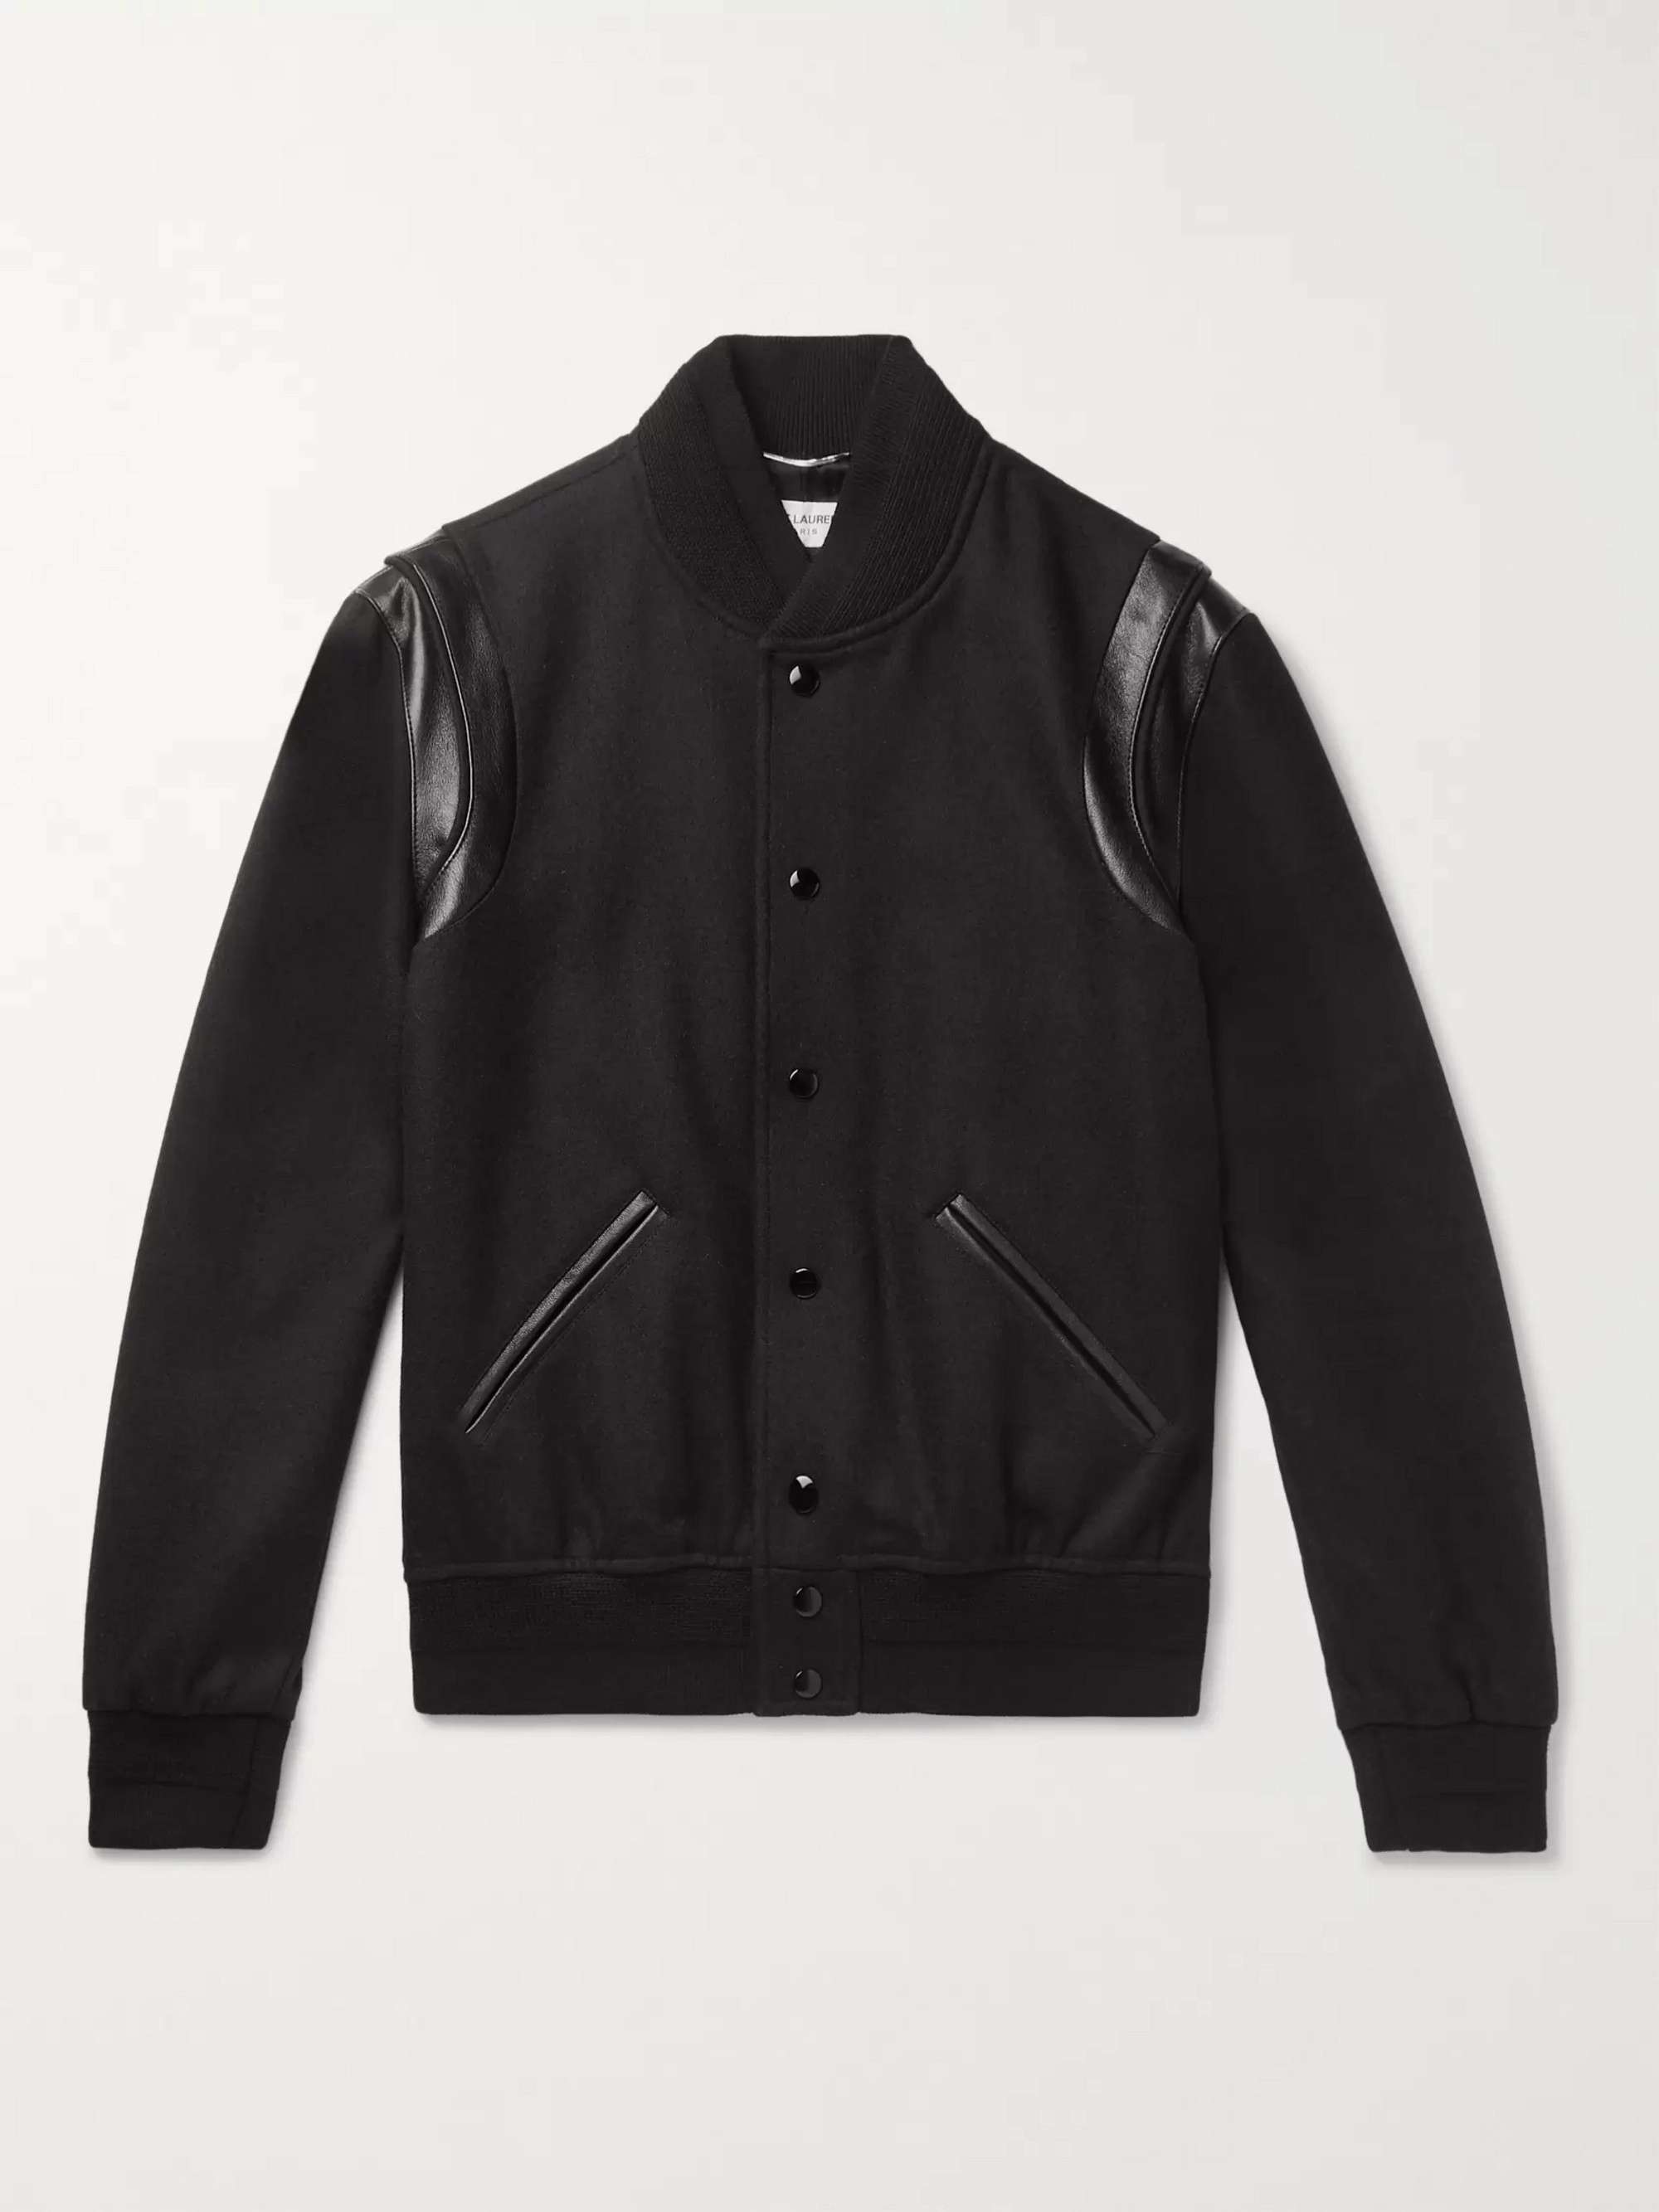 【名作/14aw】 Saint Laurent teddy jacket